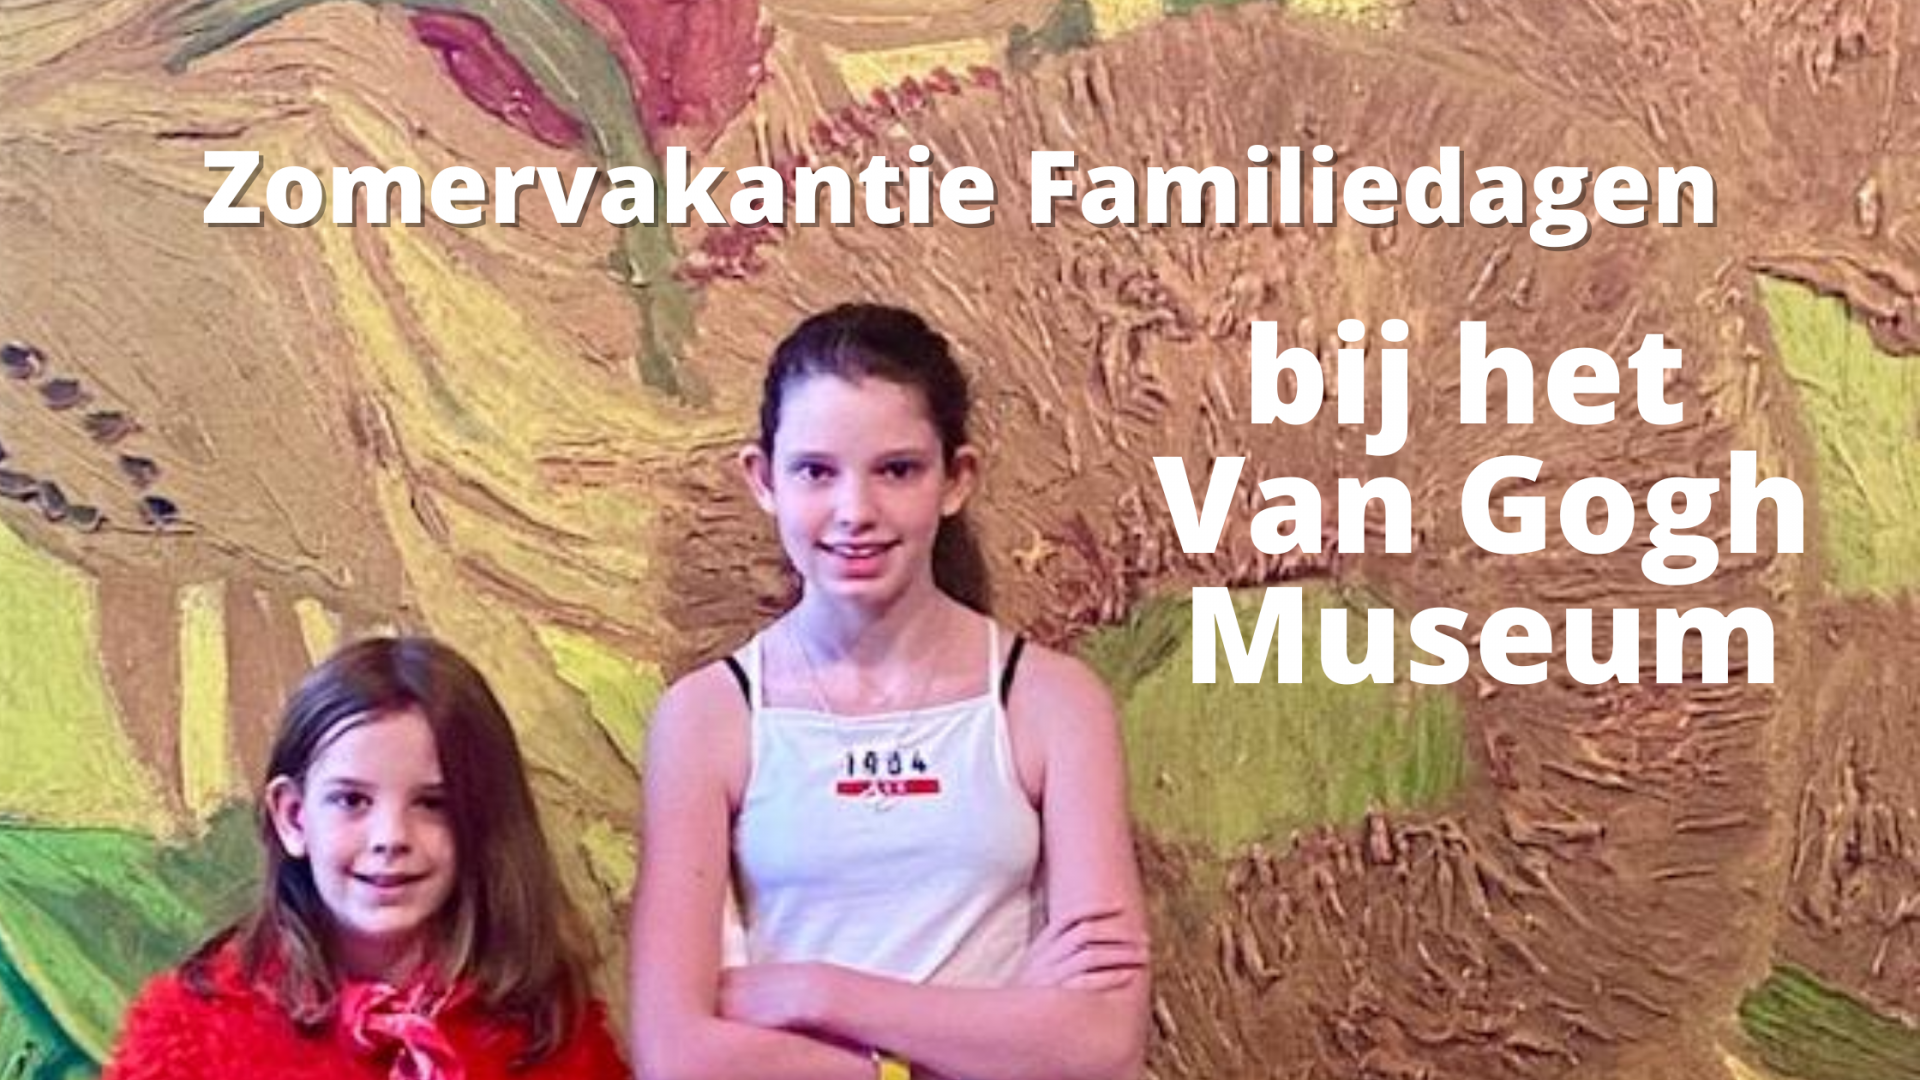 Zomervakantie Familiedagen bij het Van Gogh Museum